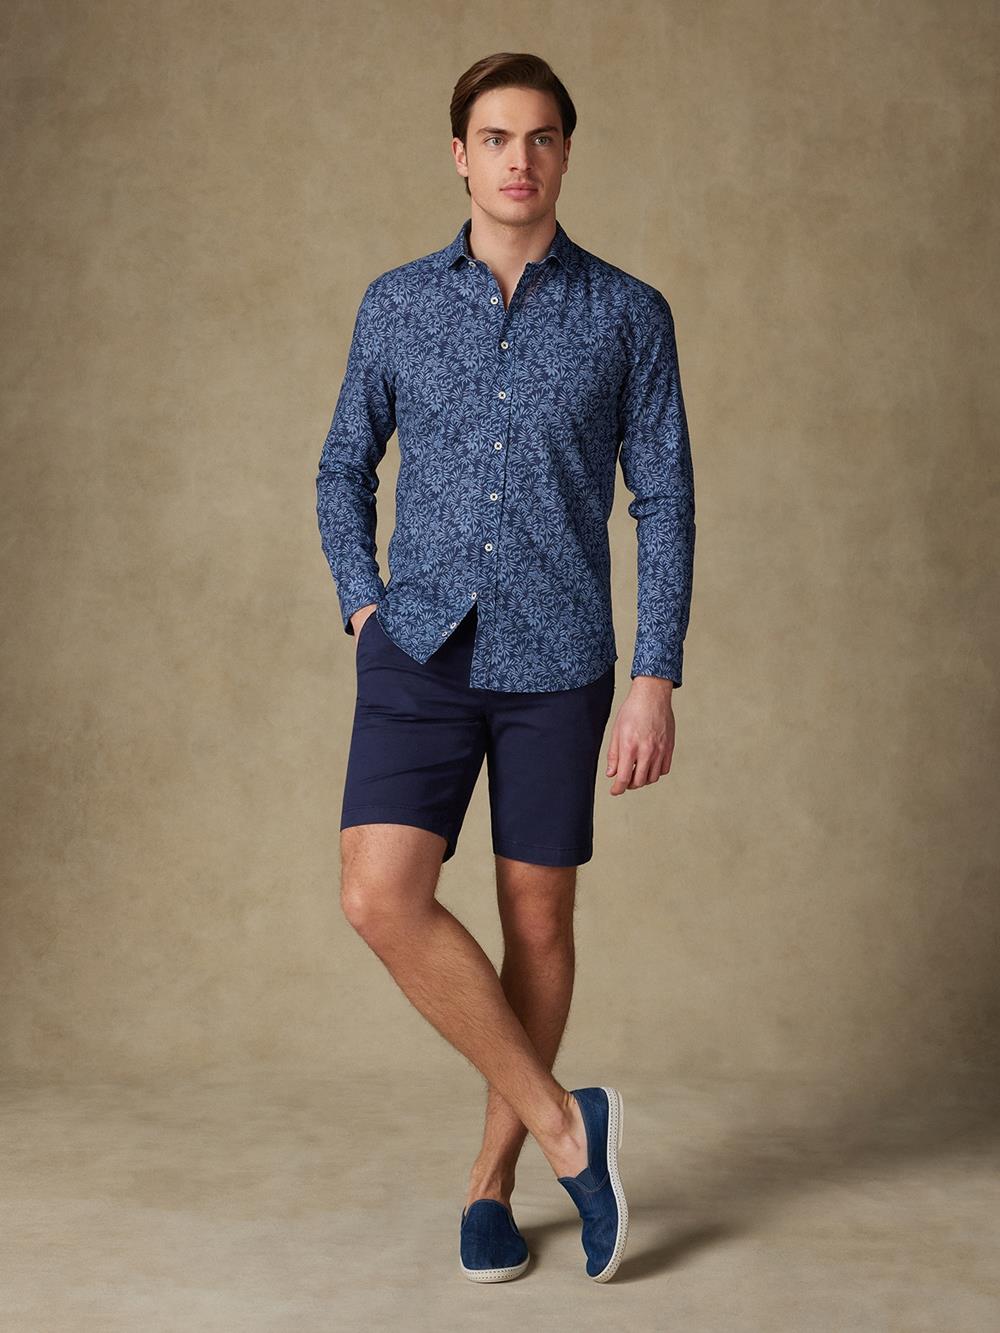 Camisa slim fit Spike de lino azul marino con estampado floral 